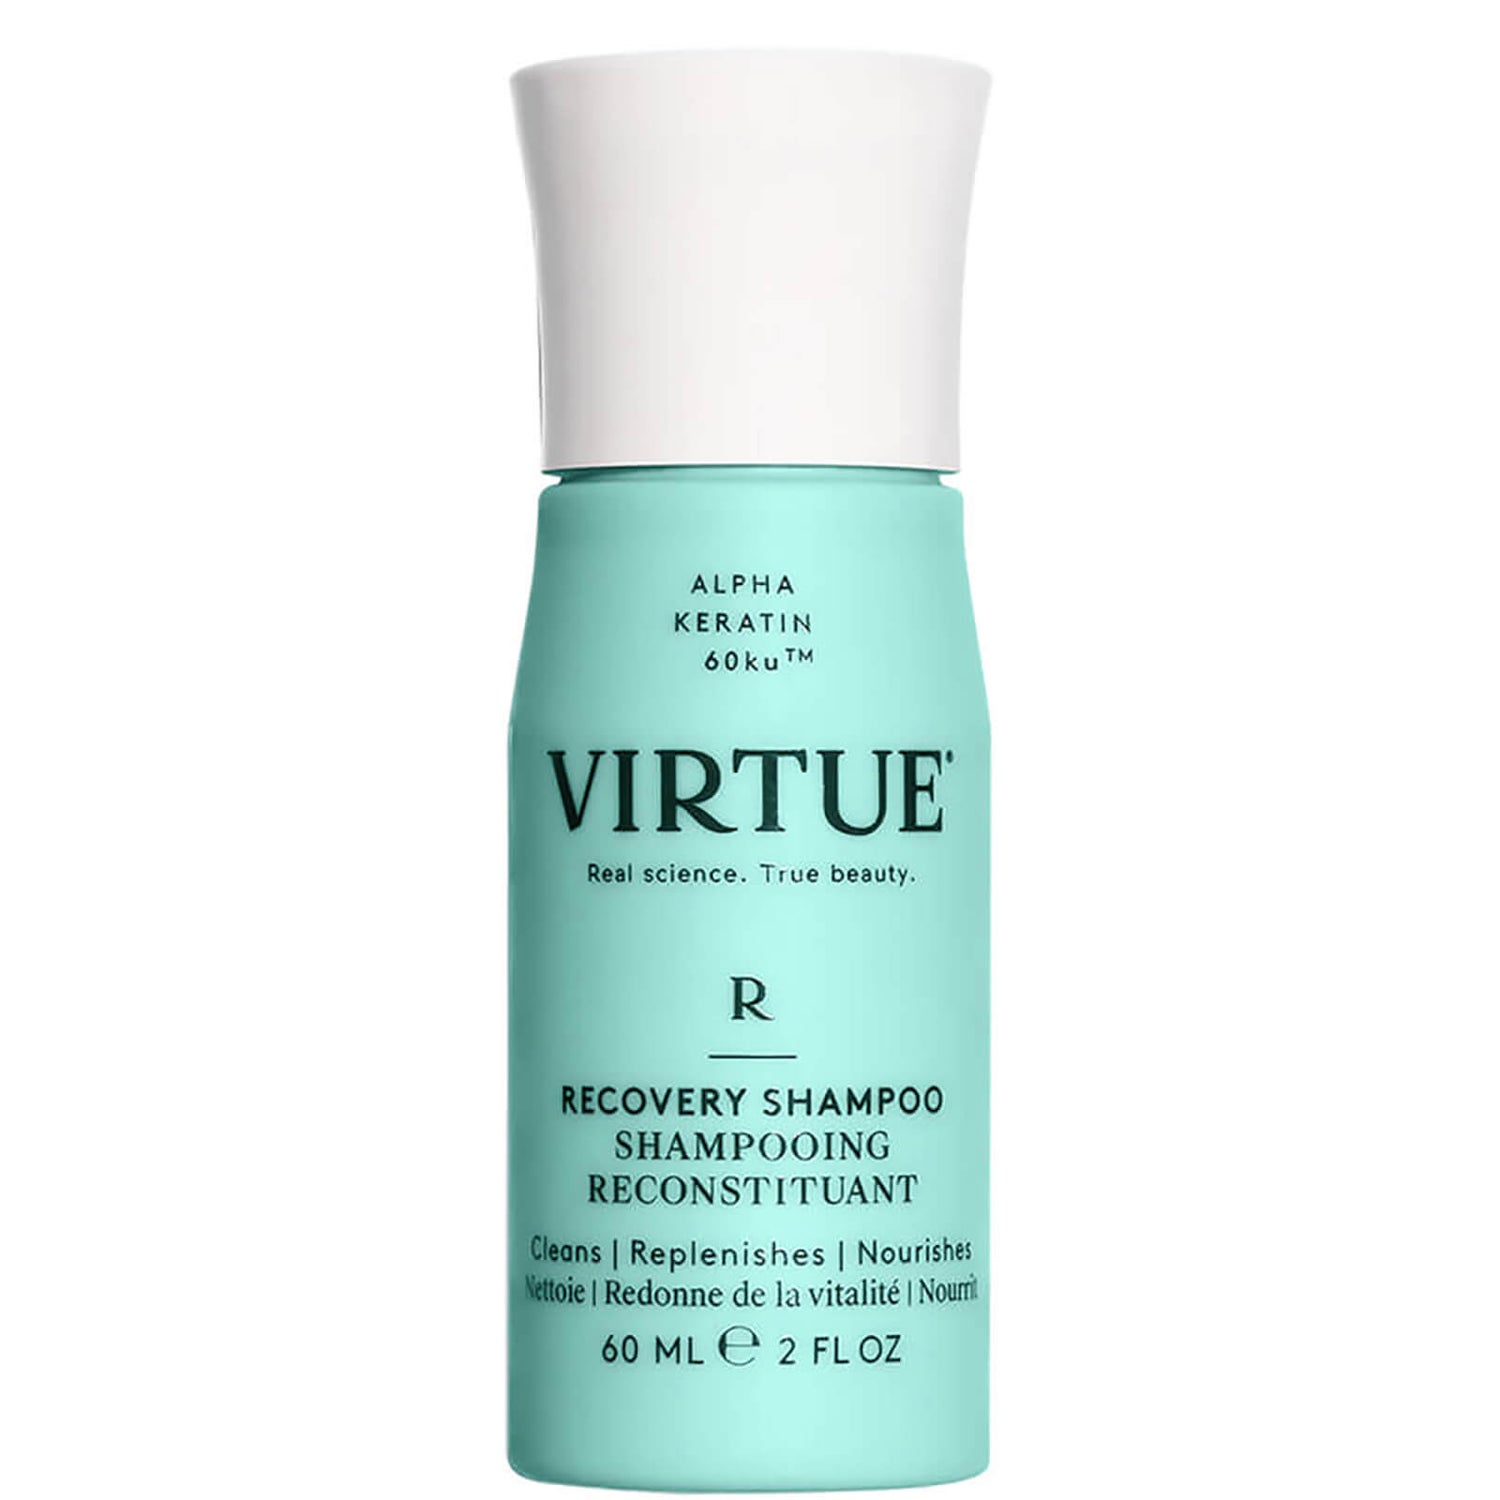 virtue shampoo travel size